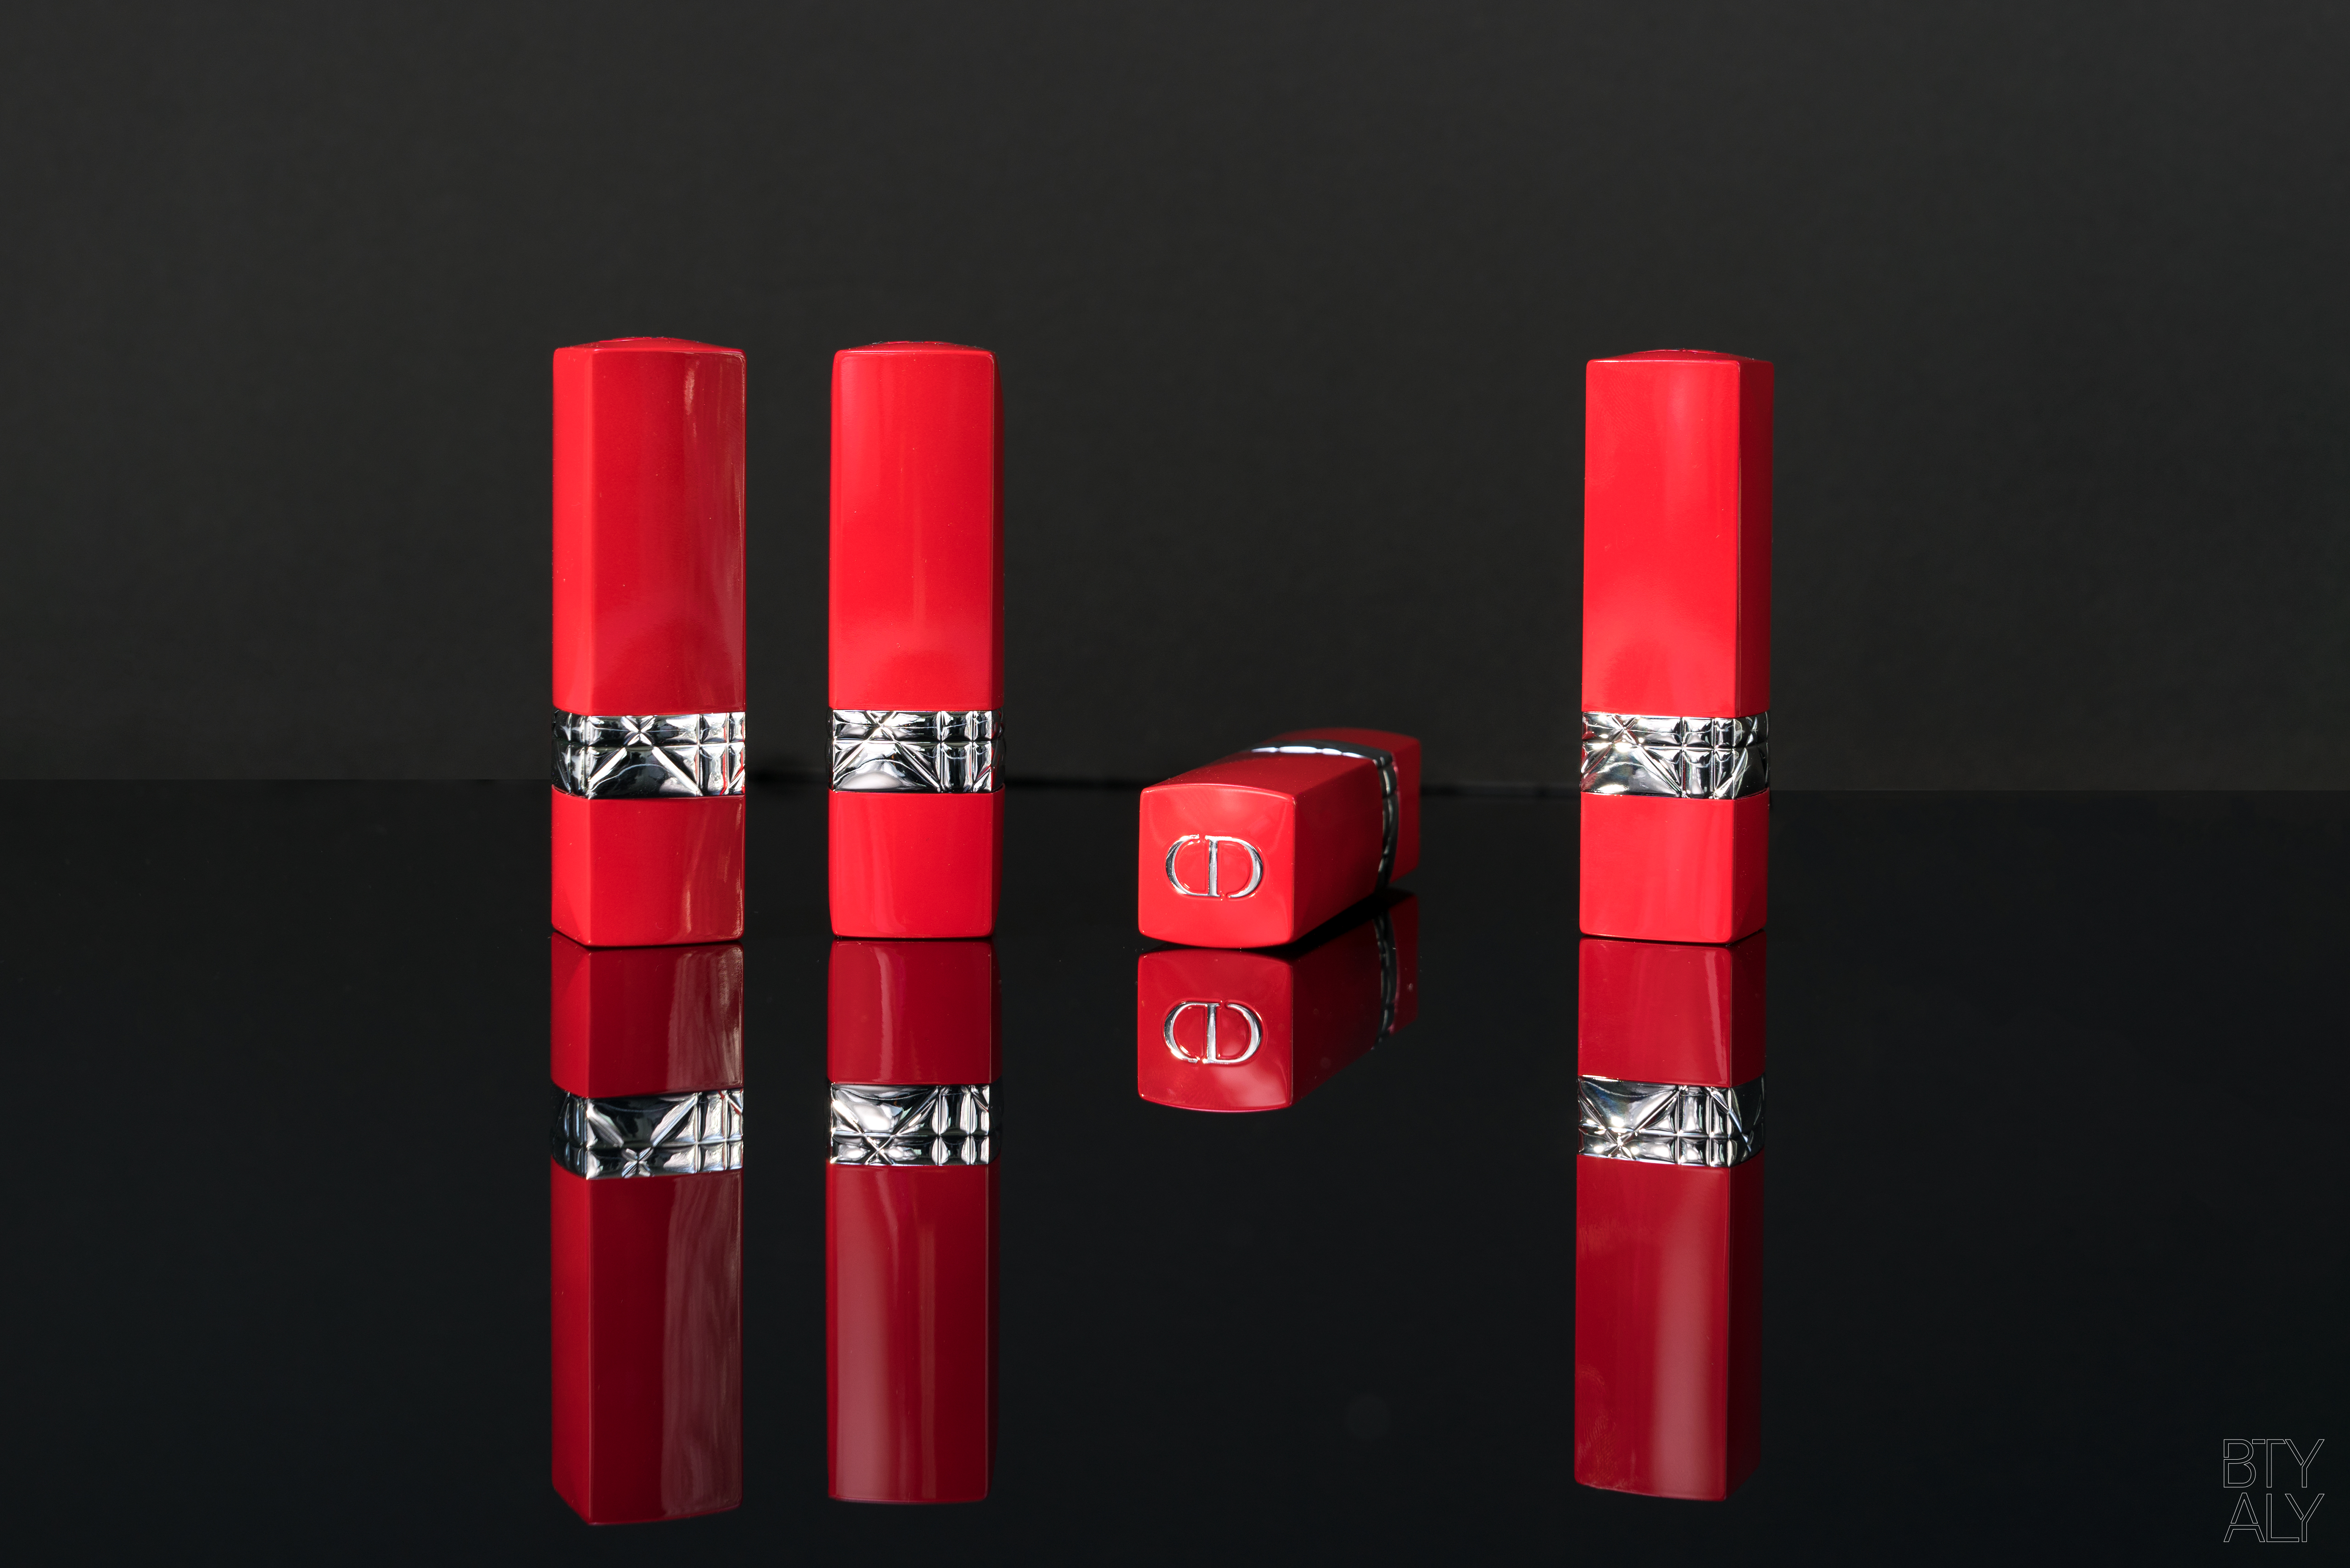 Chia sẻ với hơn 65 về rouge dior ultra rouge lipstick mới nhất   cdgdbentreeduvn